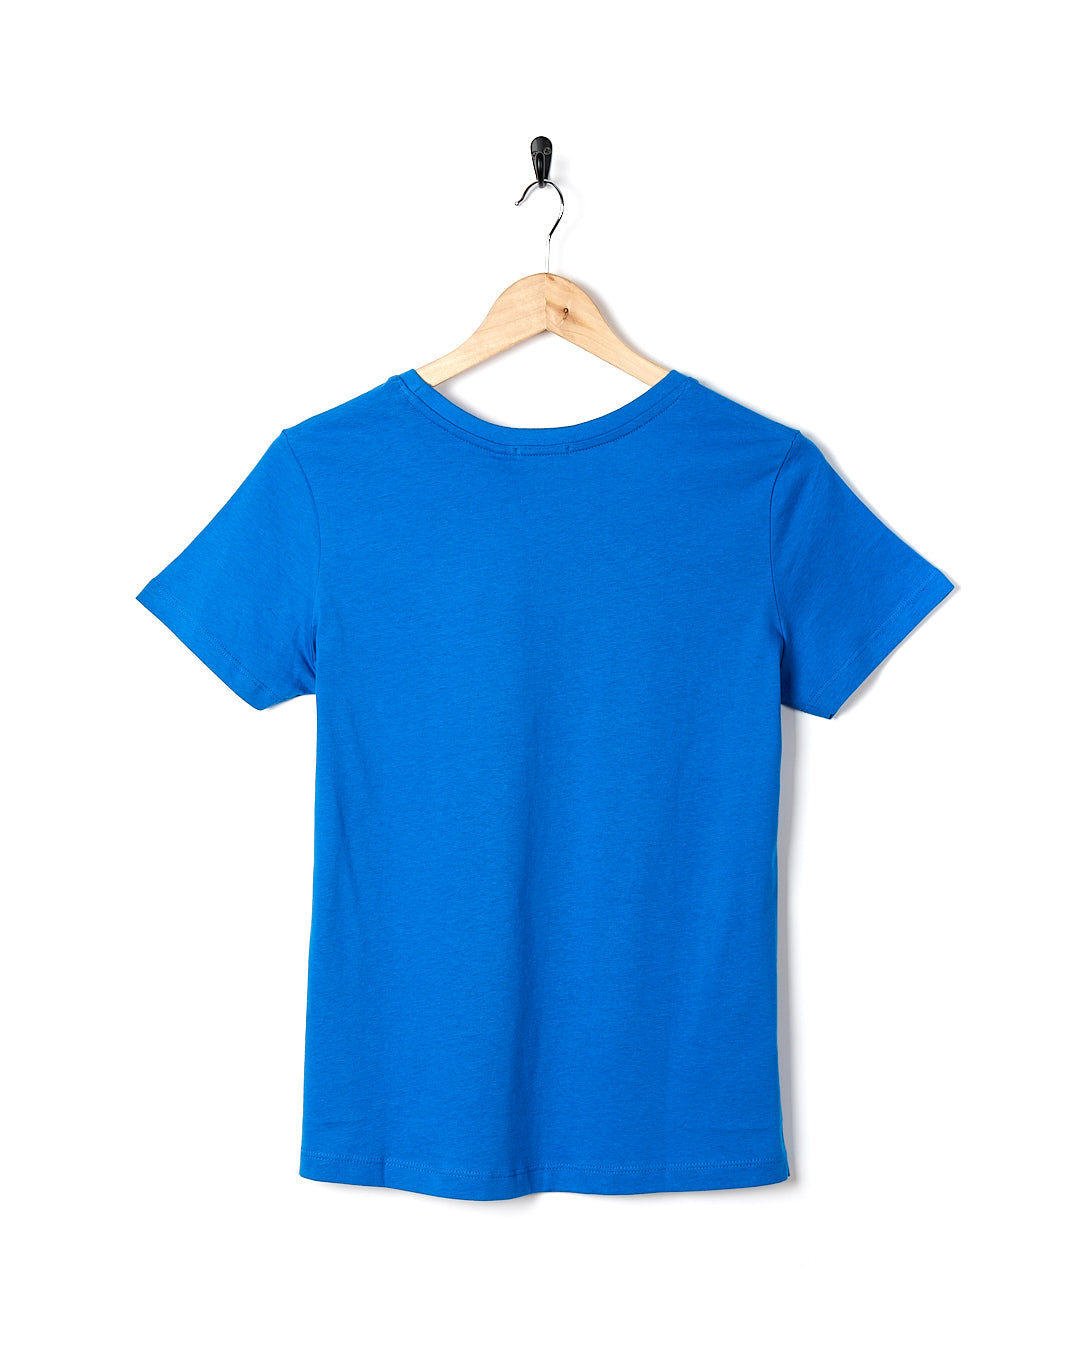 Devana - Womens Short Sleeve T-Shirt - Blue